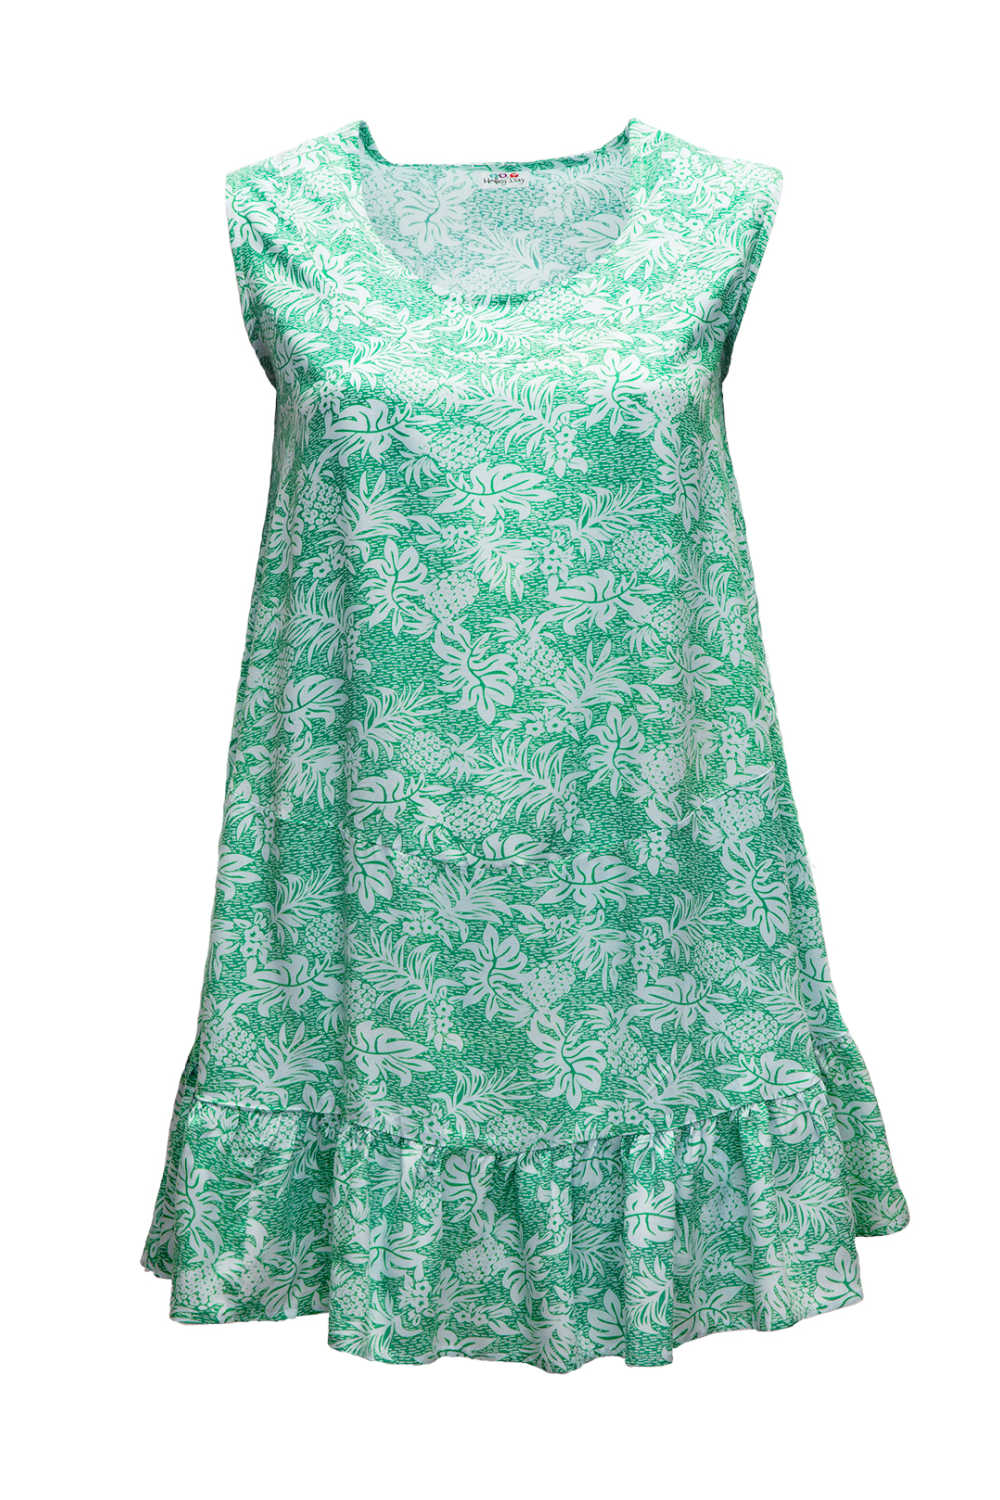 summer-dress-white-green-pineapple-print-design